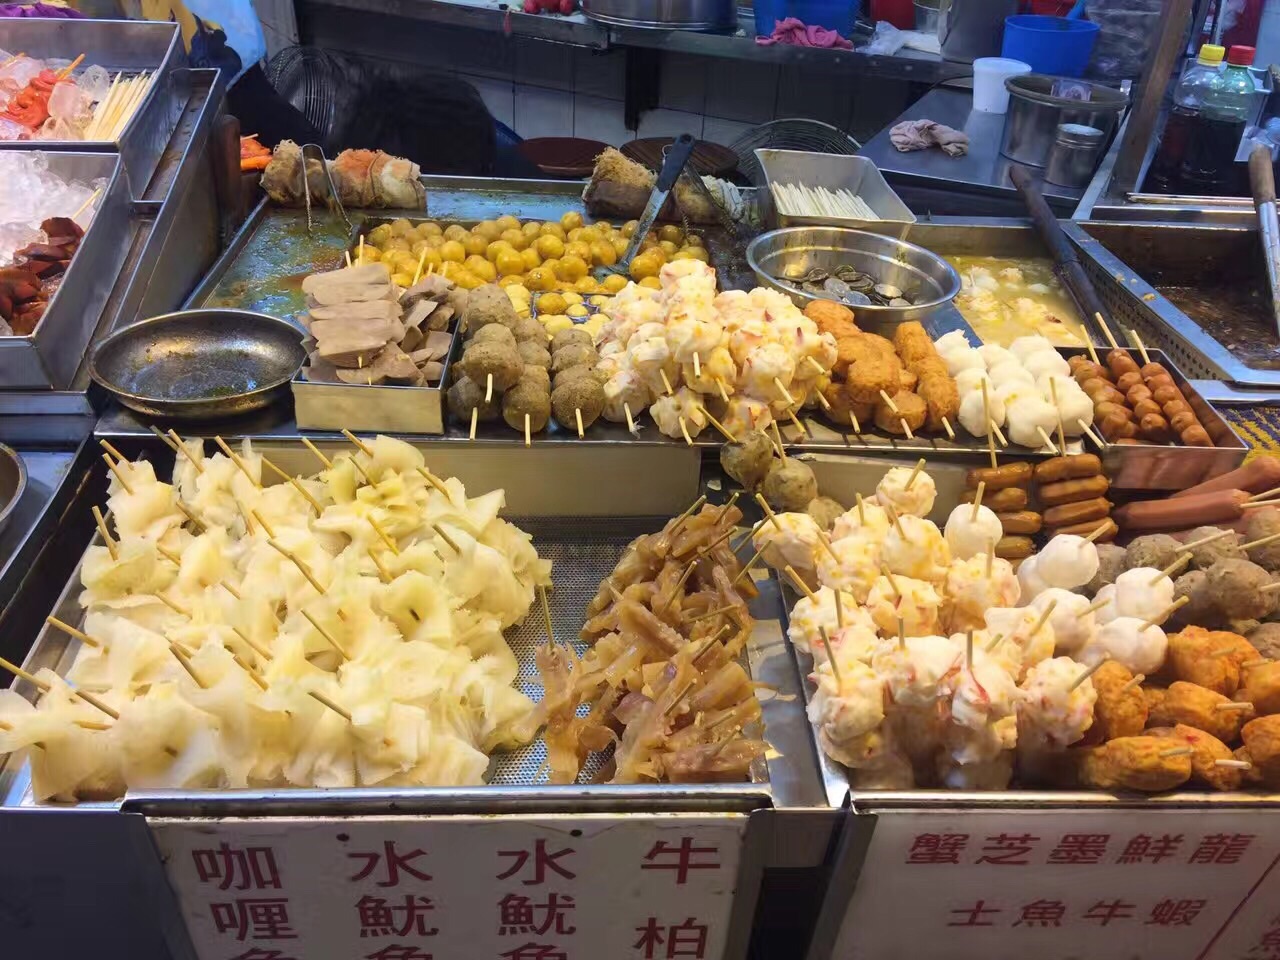 超级好吃的路边摊,混搭夜宵模式开启,在香港就是吃吃吃模式